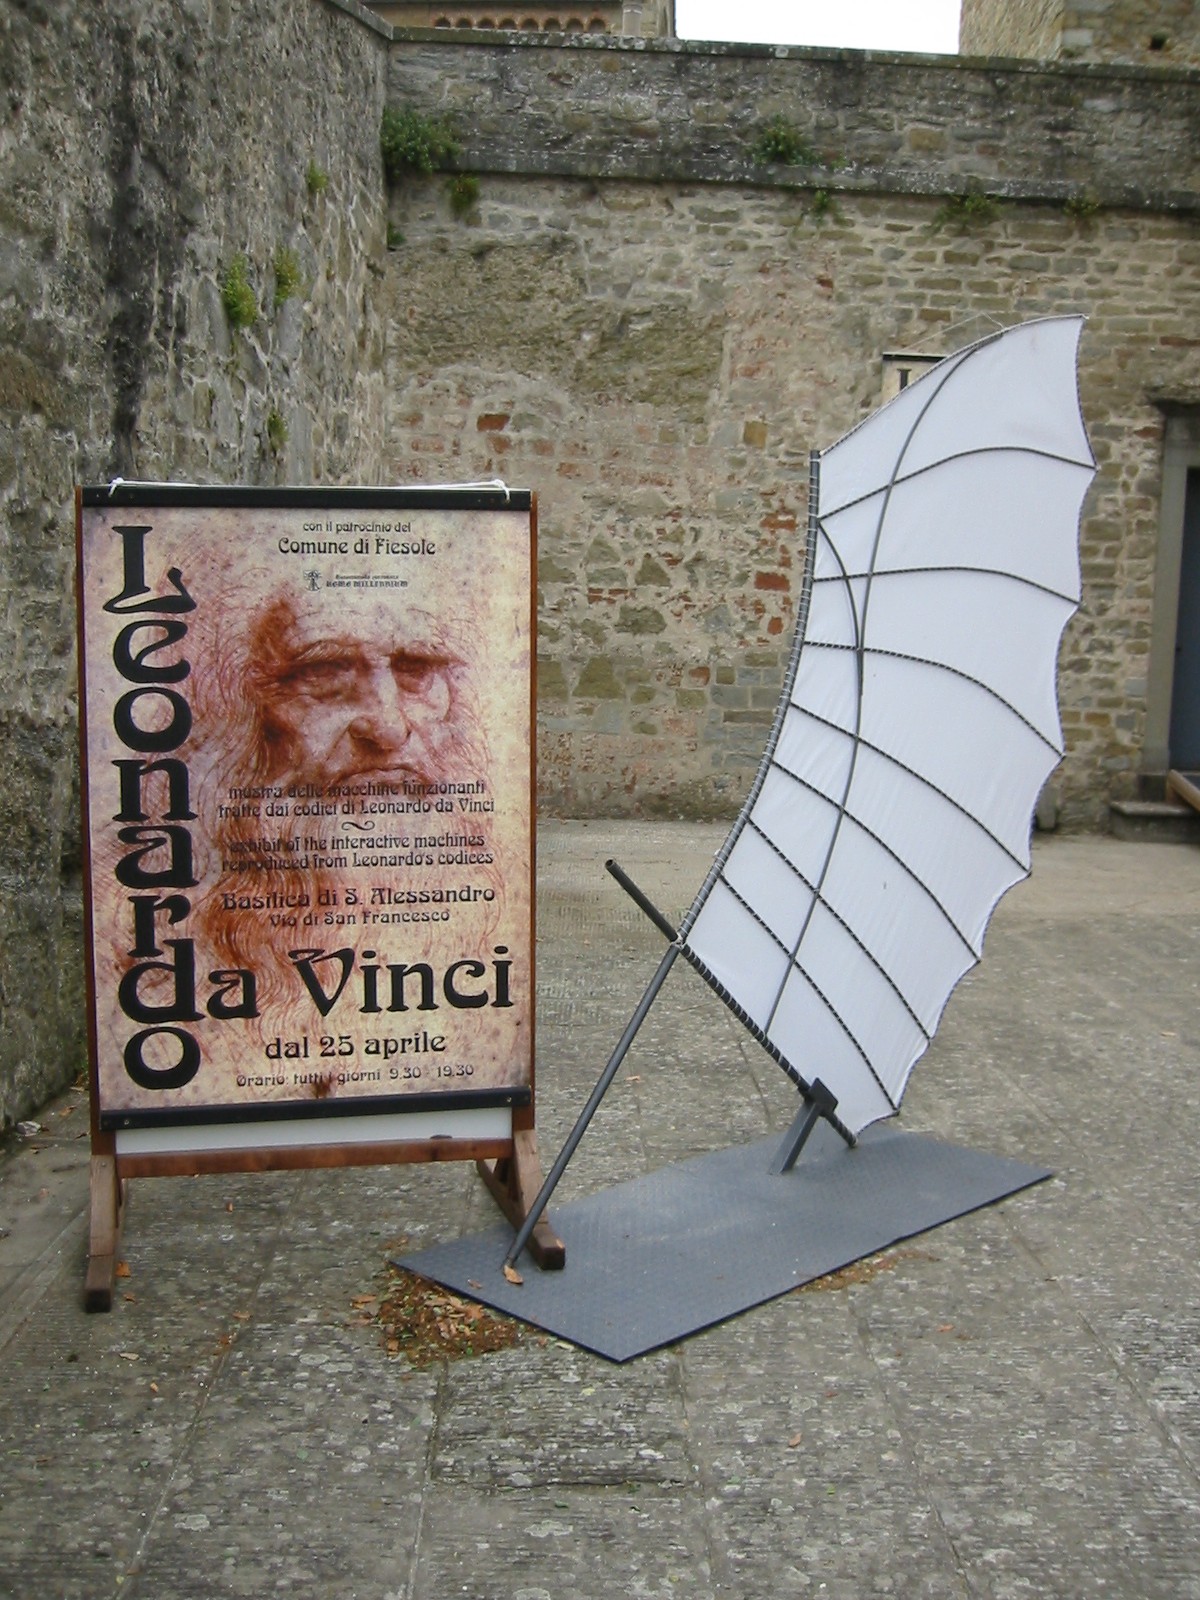 David and the Leonardo da Vinci Exhibition